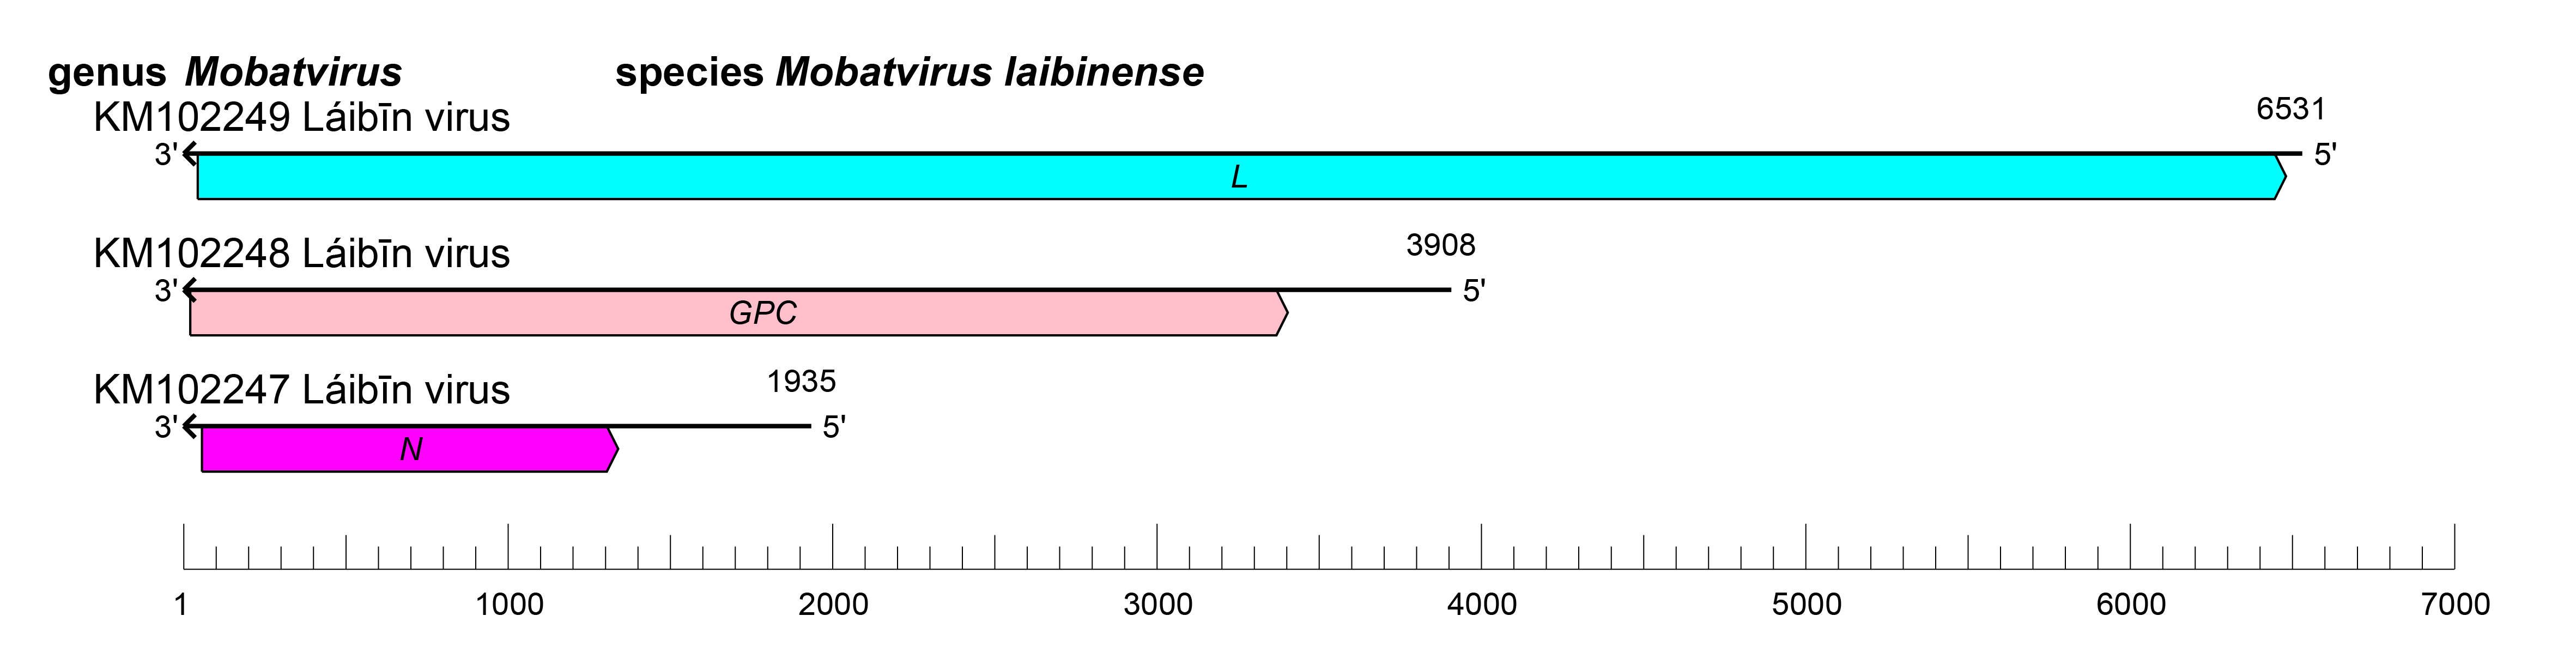 Mobatvirus genome